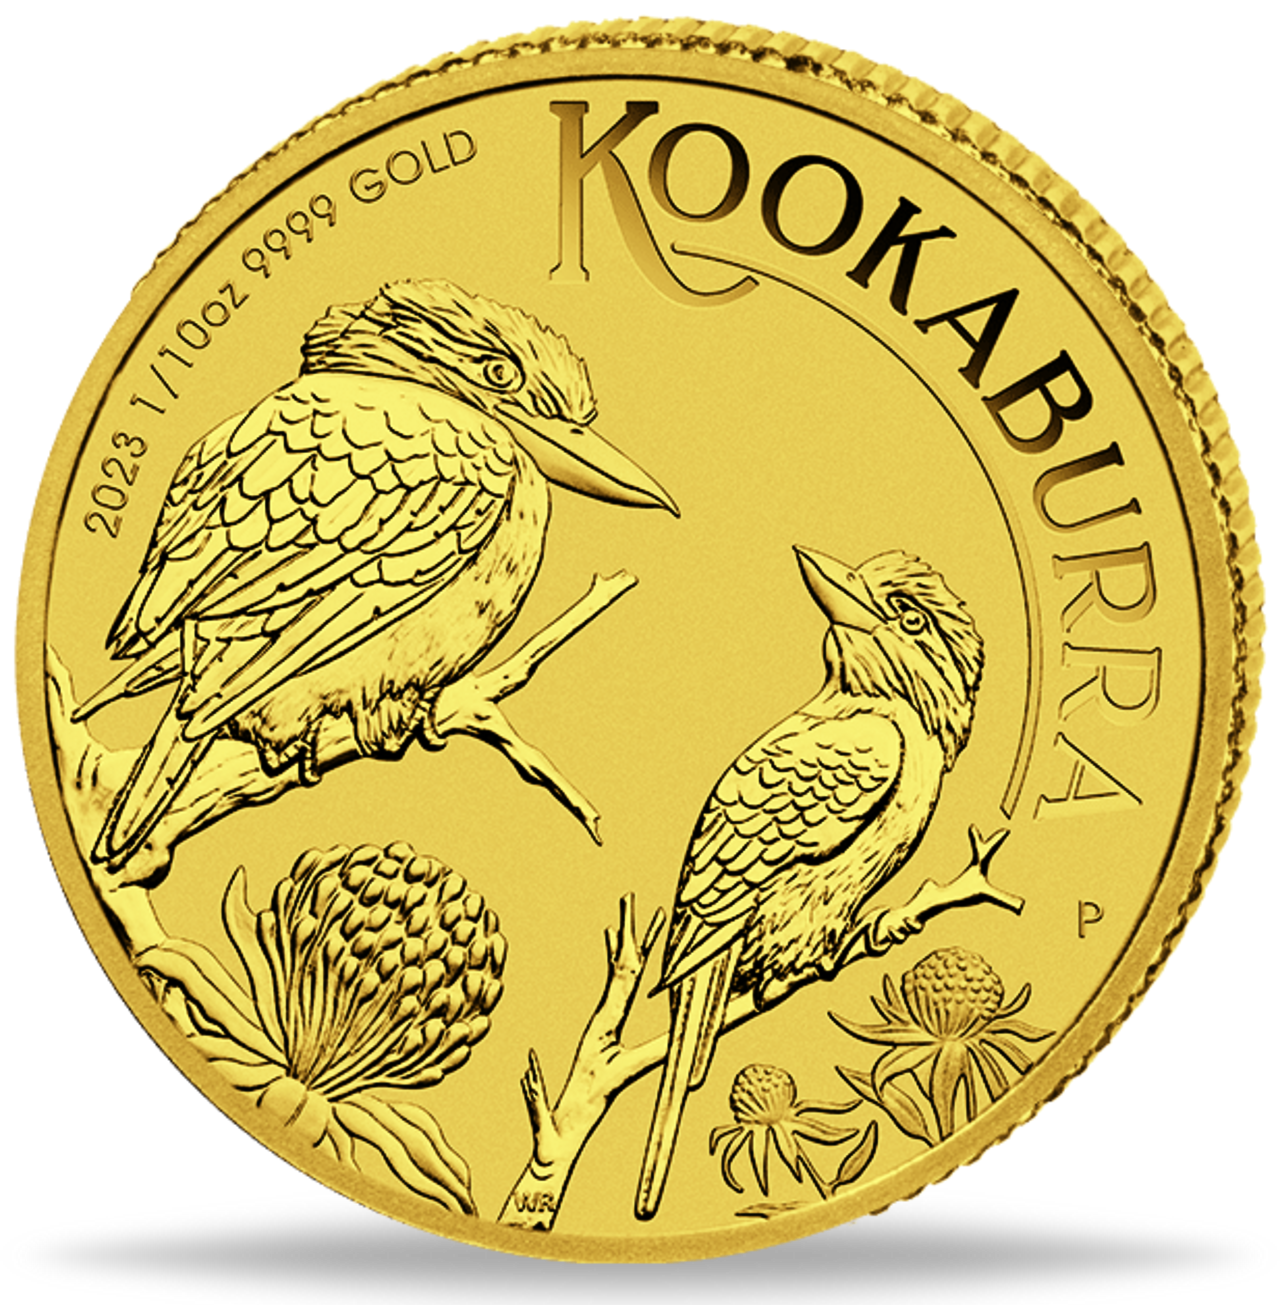 Goldmünze Kookaburra - Eines der schönsten Designs bei australischen Goldanlagemünzen